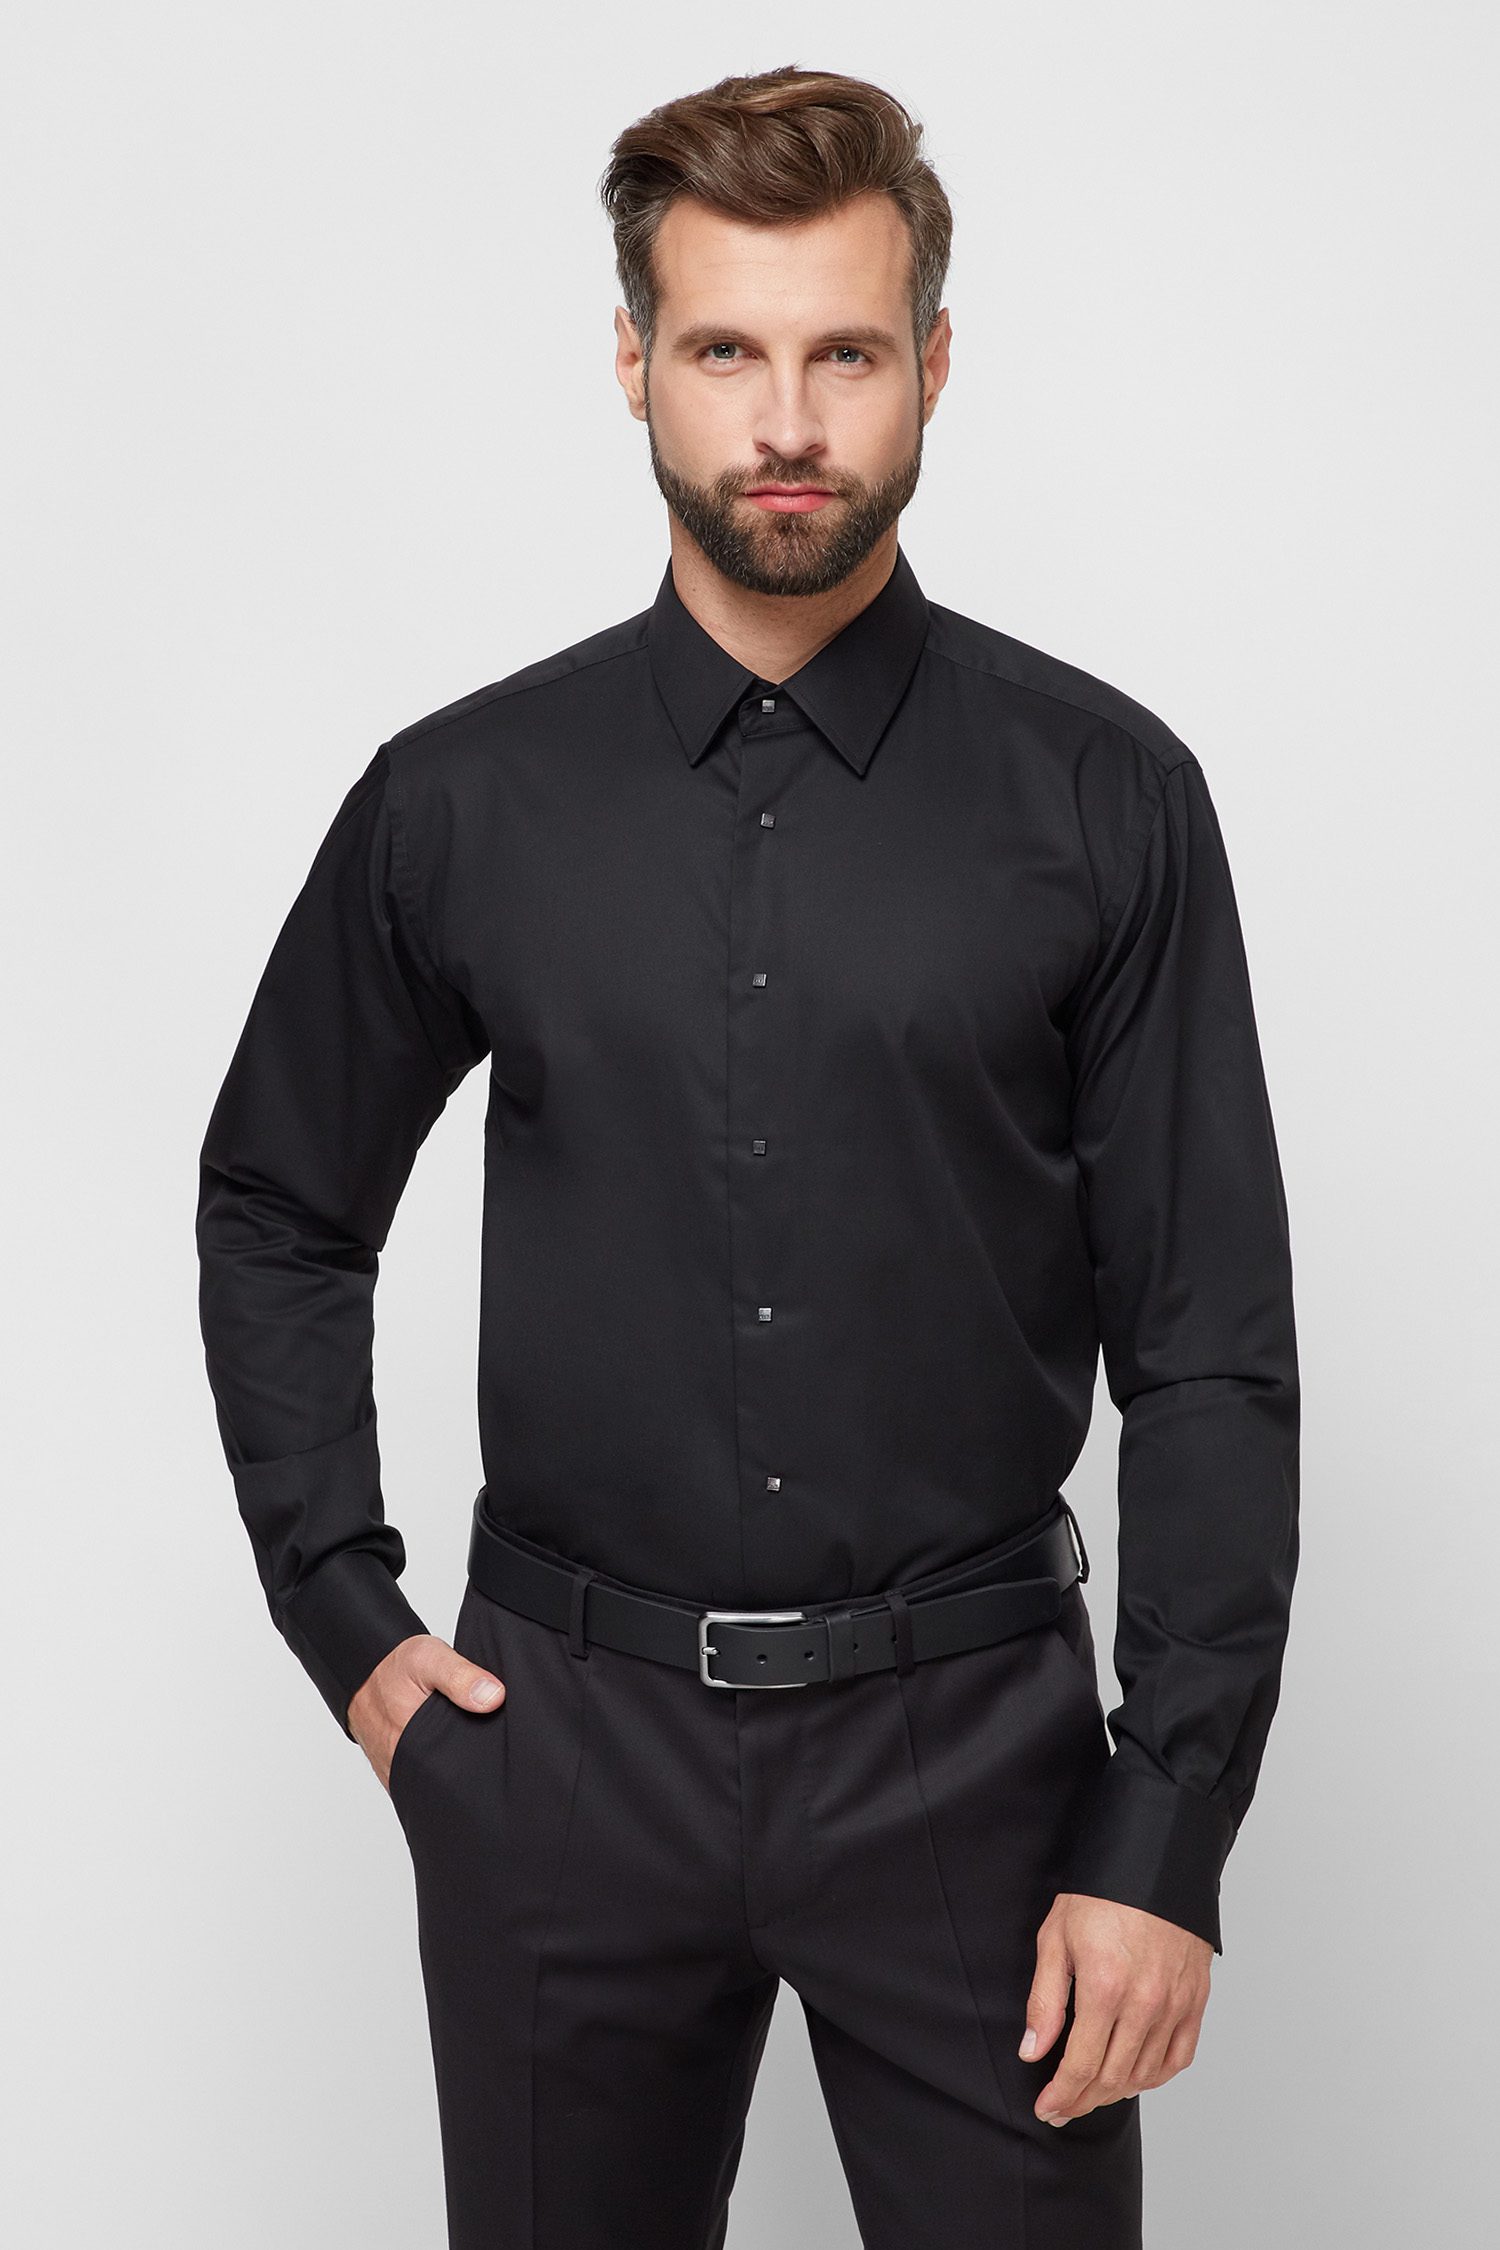 Чоловіча чорна сорочка Karl Lagerfeld 500699.605000;990